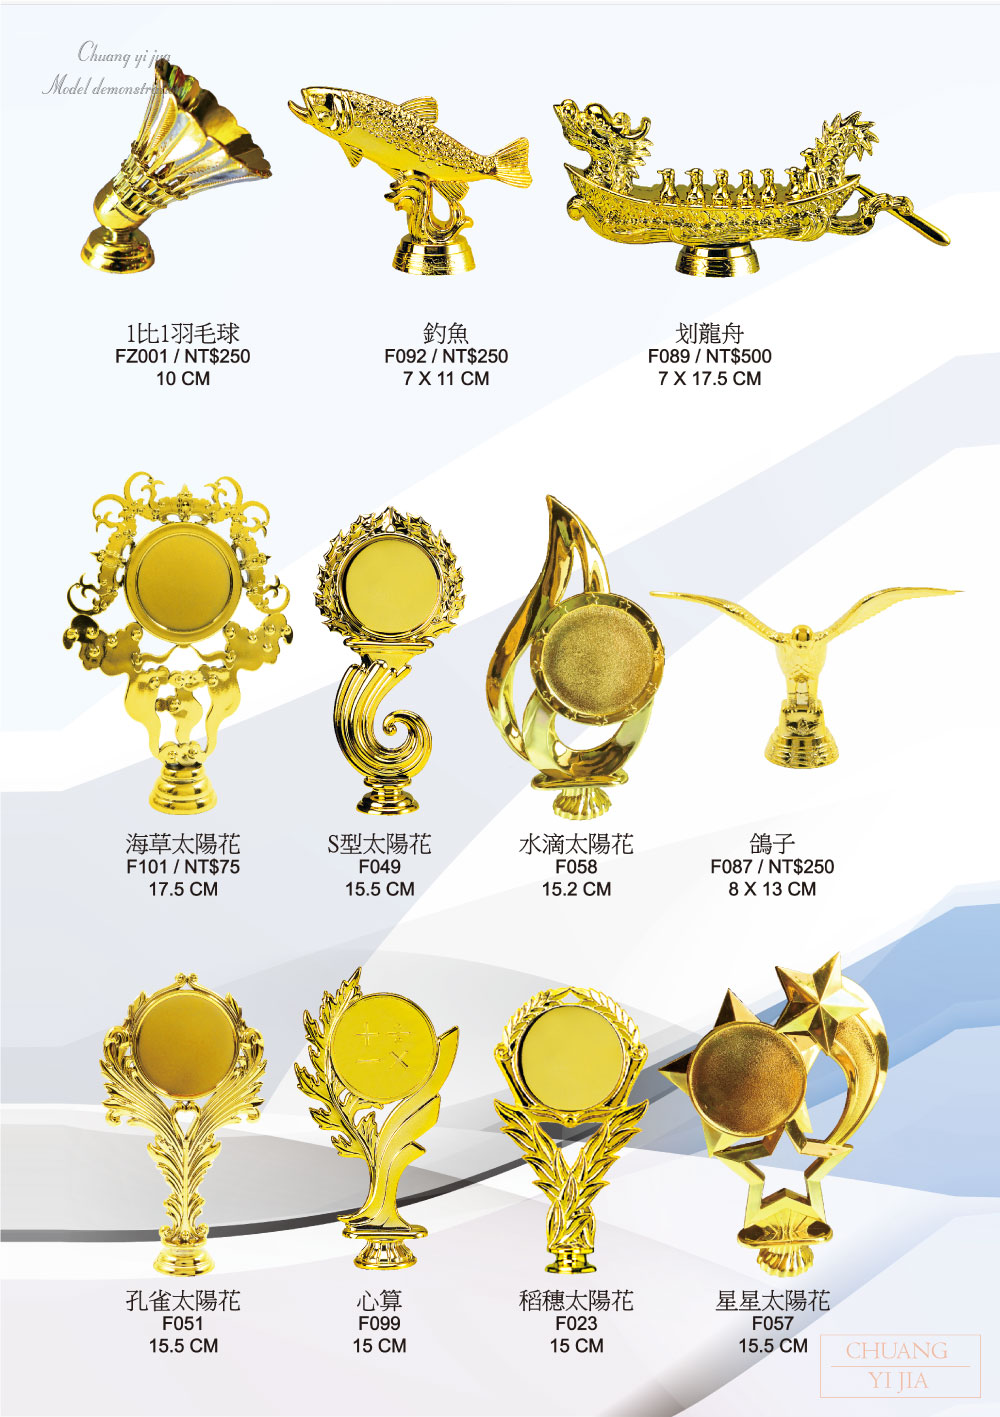 台灣製造,獎盃,獎牌,吊牌,運動獎盃,比賽獎盃,活動獎盃,琉璃獎盃,水晶獎盃